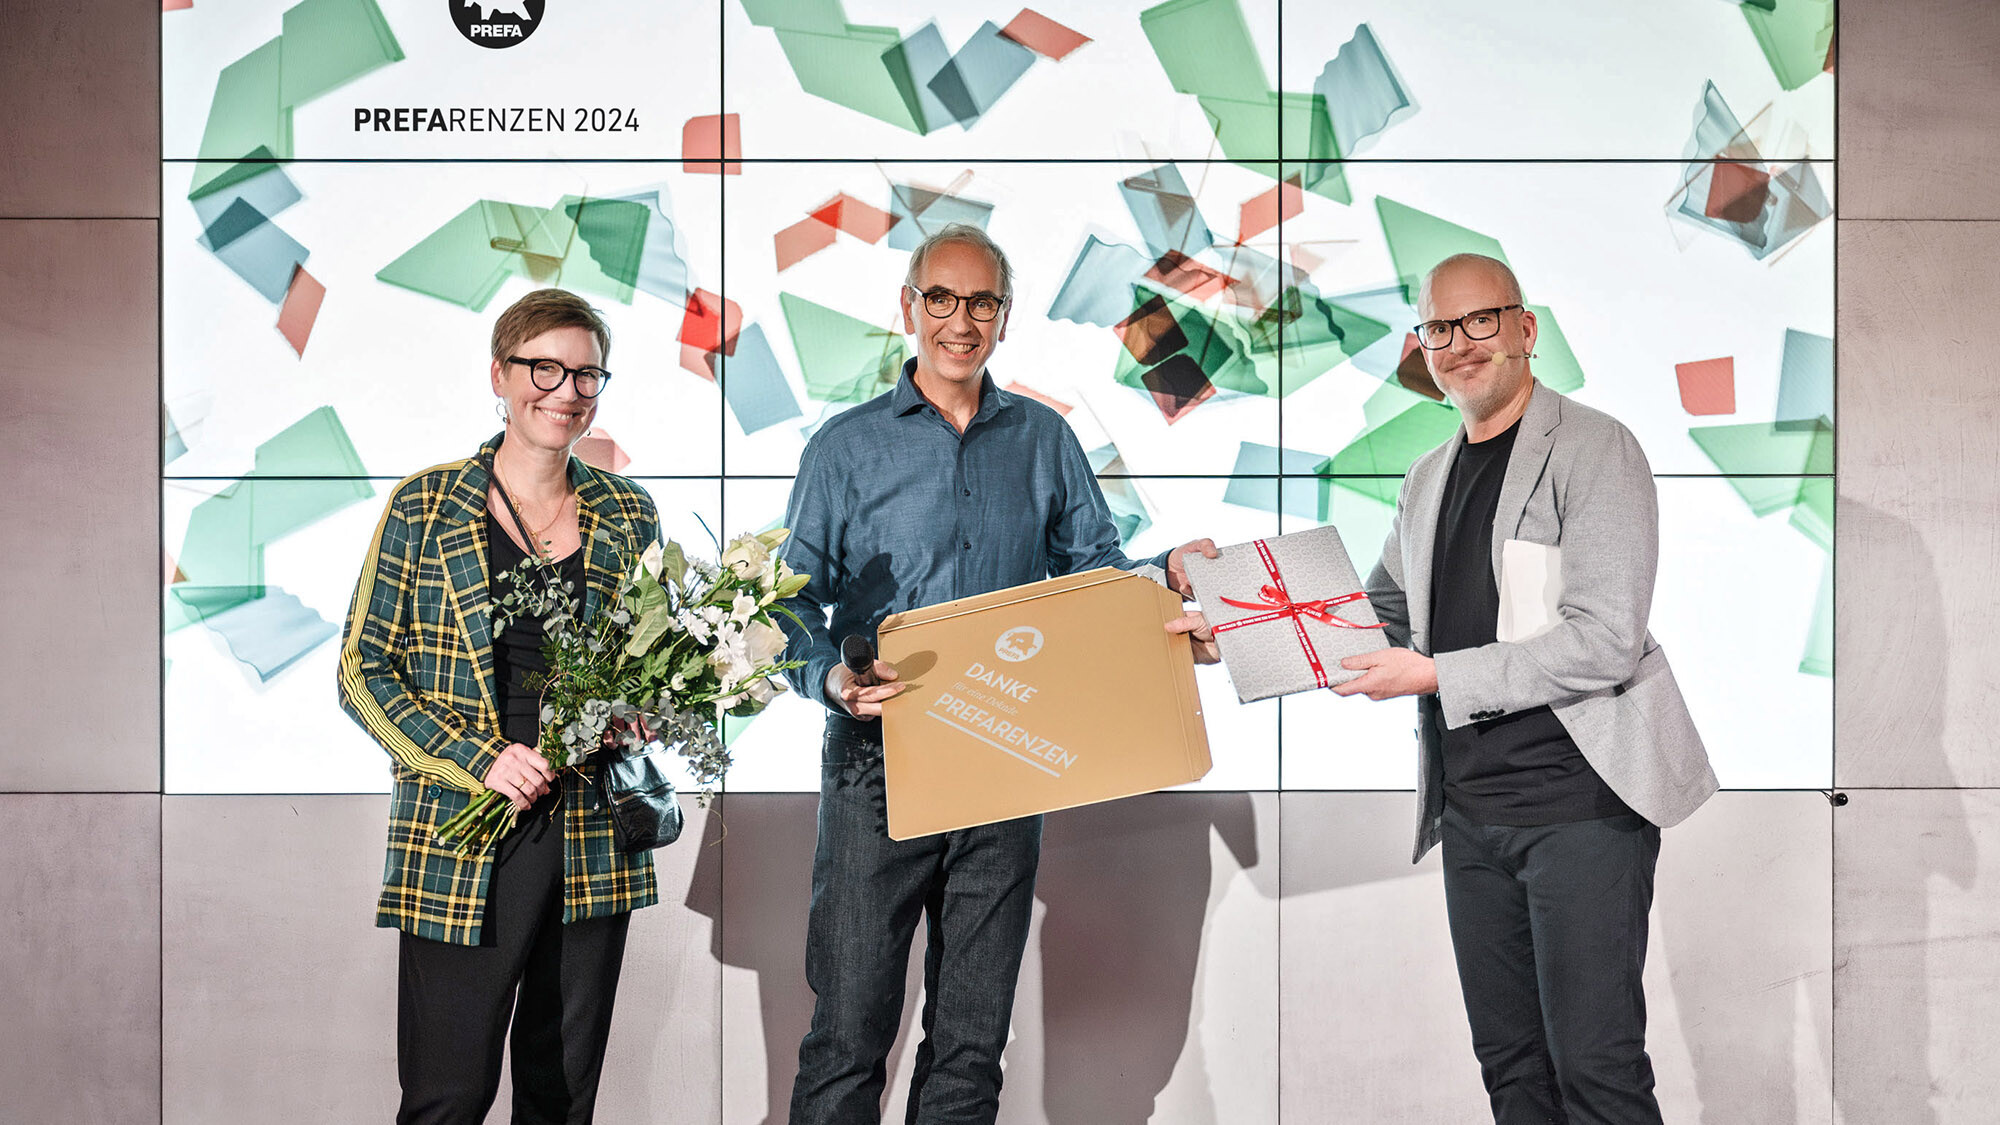 Die Fotografen Juliane Croce und Wolfgang Croce mit Marketingleiter International Jürgen Jungmair bei der Überreichung eines Geschenks vor der Präsentationsfläche.